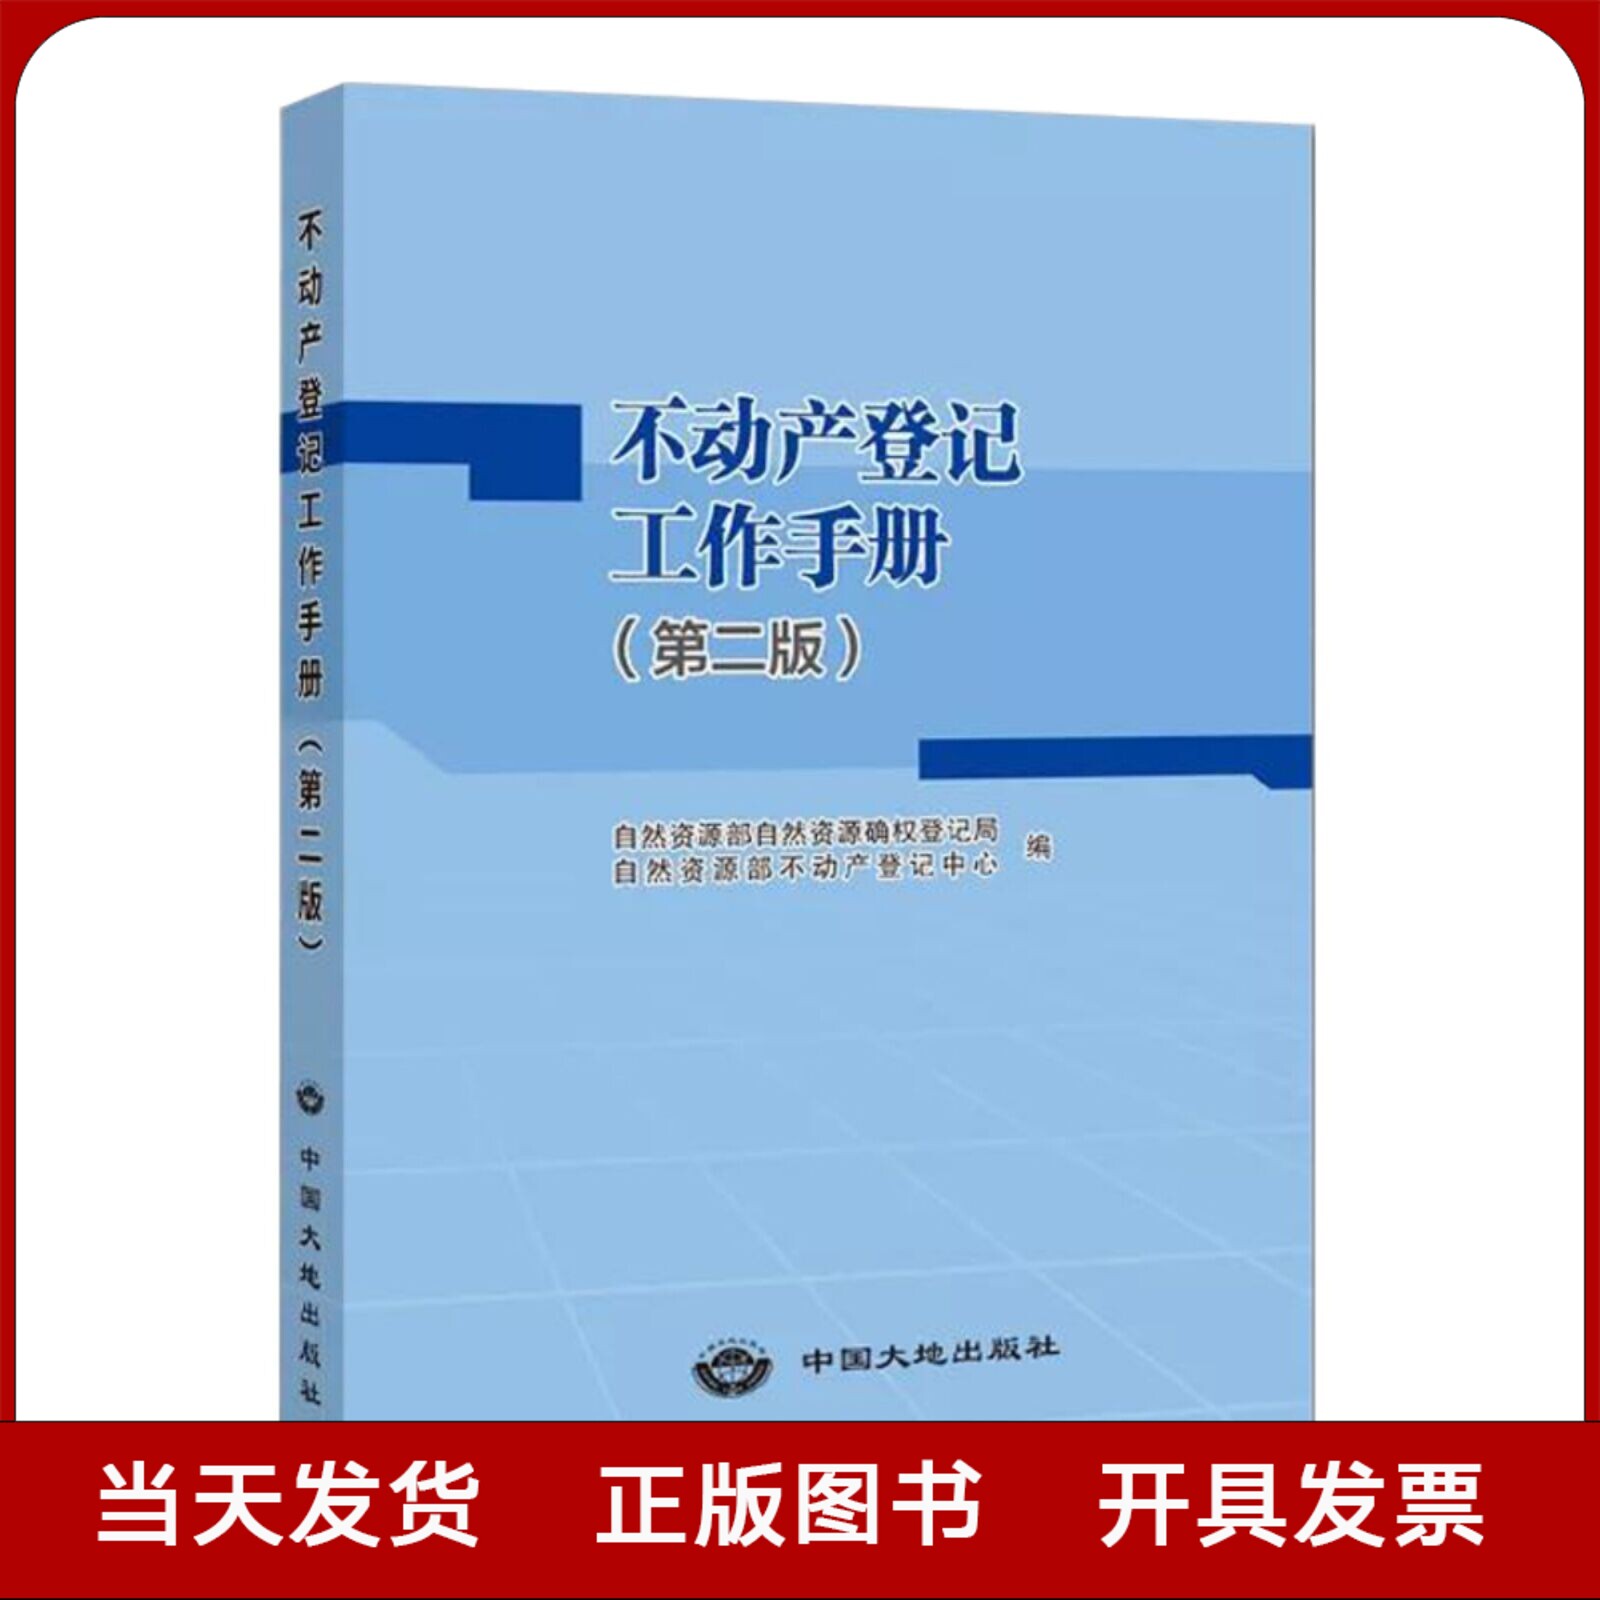 全新正版 不动产登记工作手册 第二版 2021版 法律法规文件汇编书籍 中国大地出版社